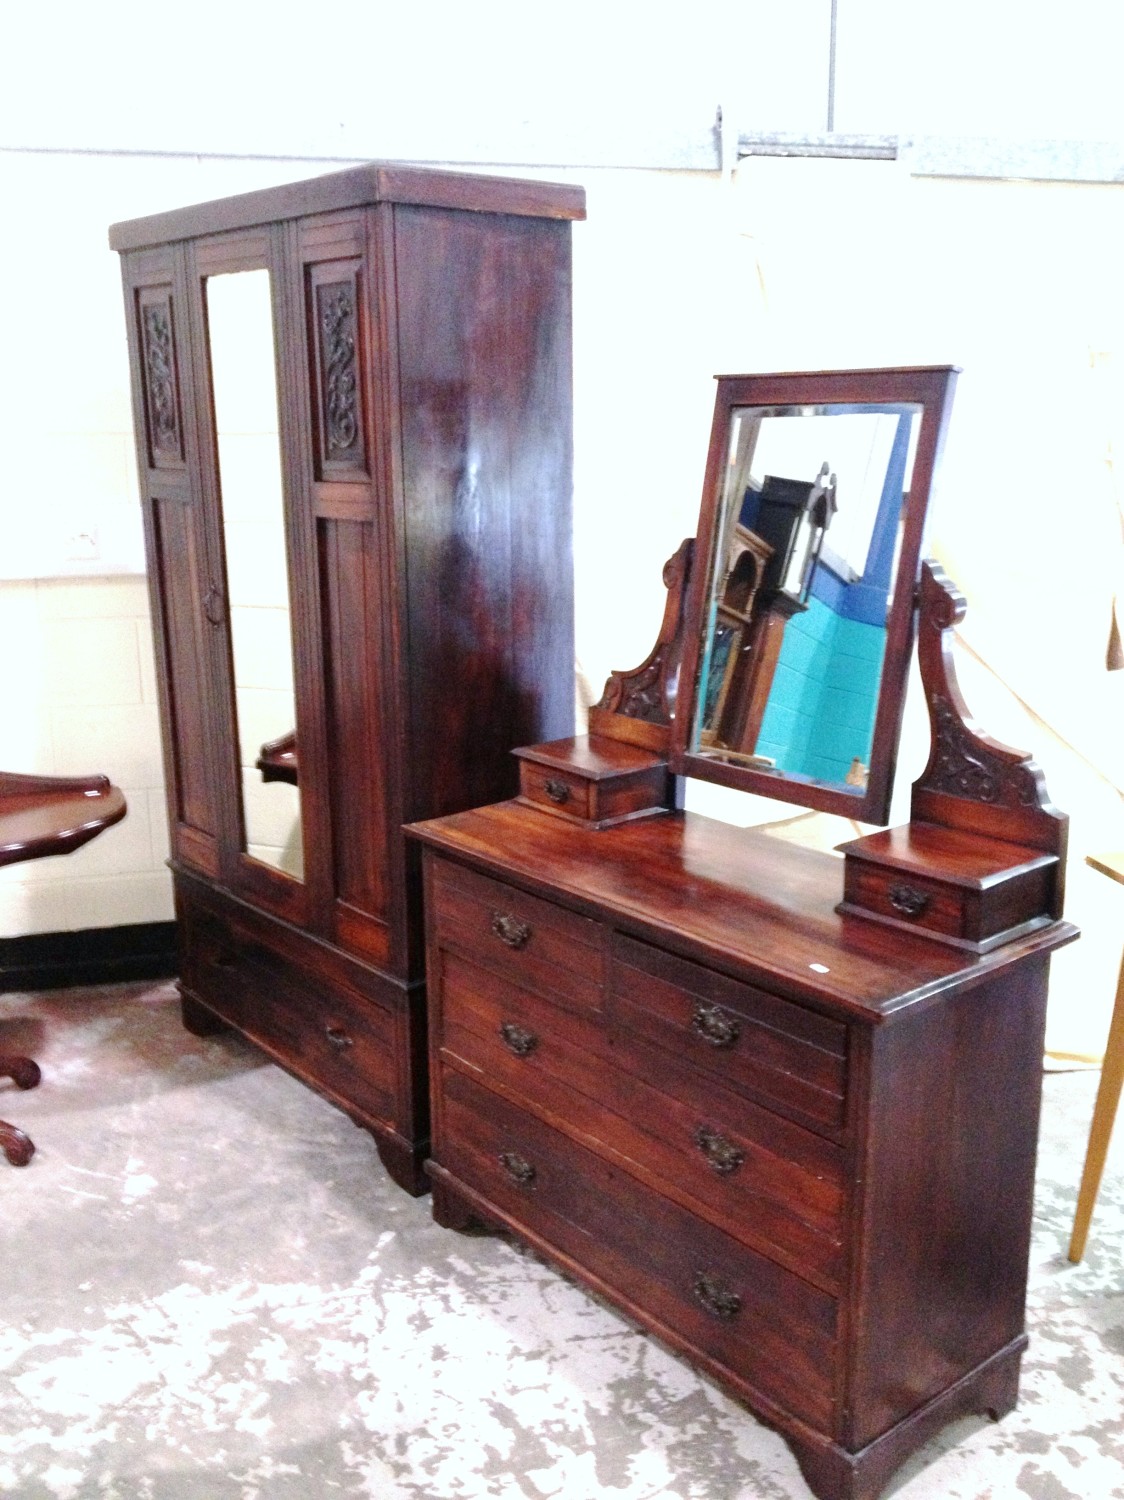 Mahogany mirror door wardrobe and dressing table